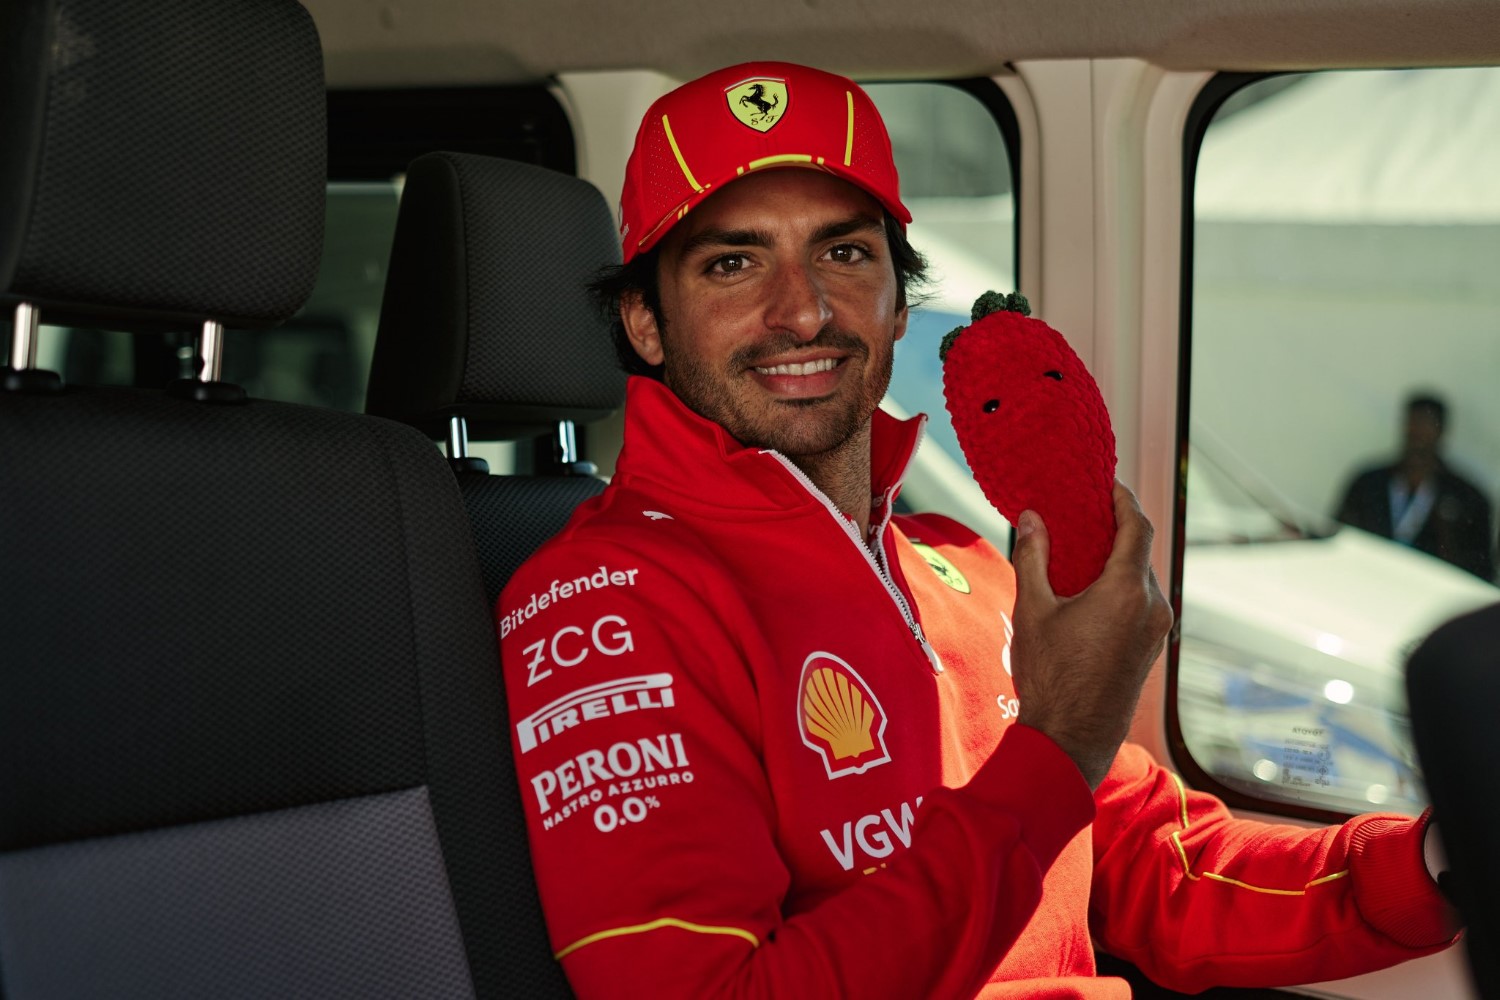 #55 Ferrari F1 driver Carlos Sainz Jr. looks happy